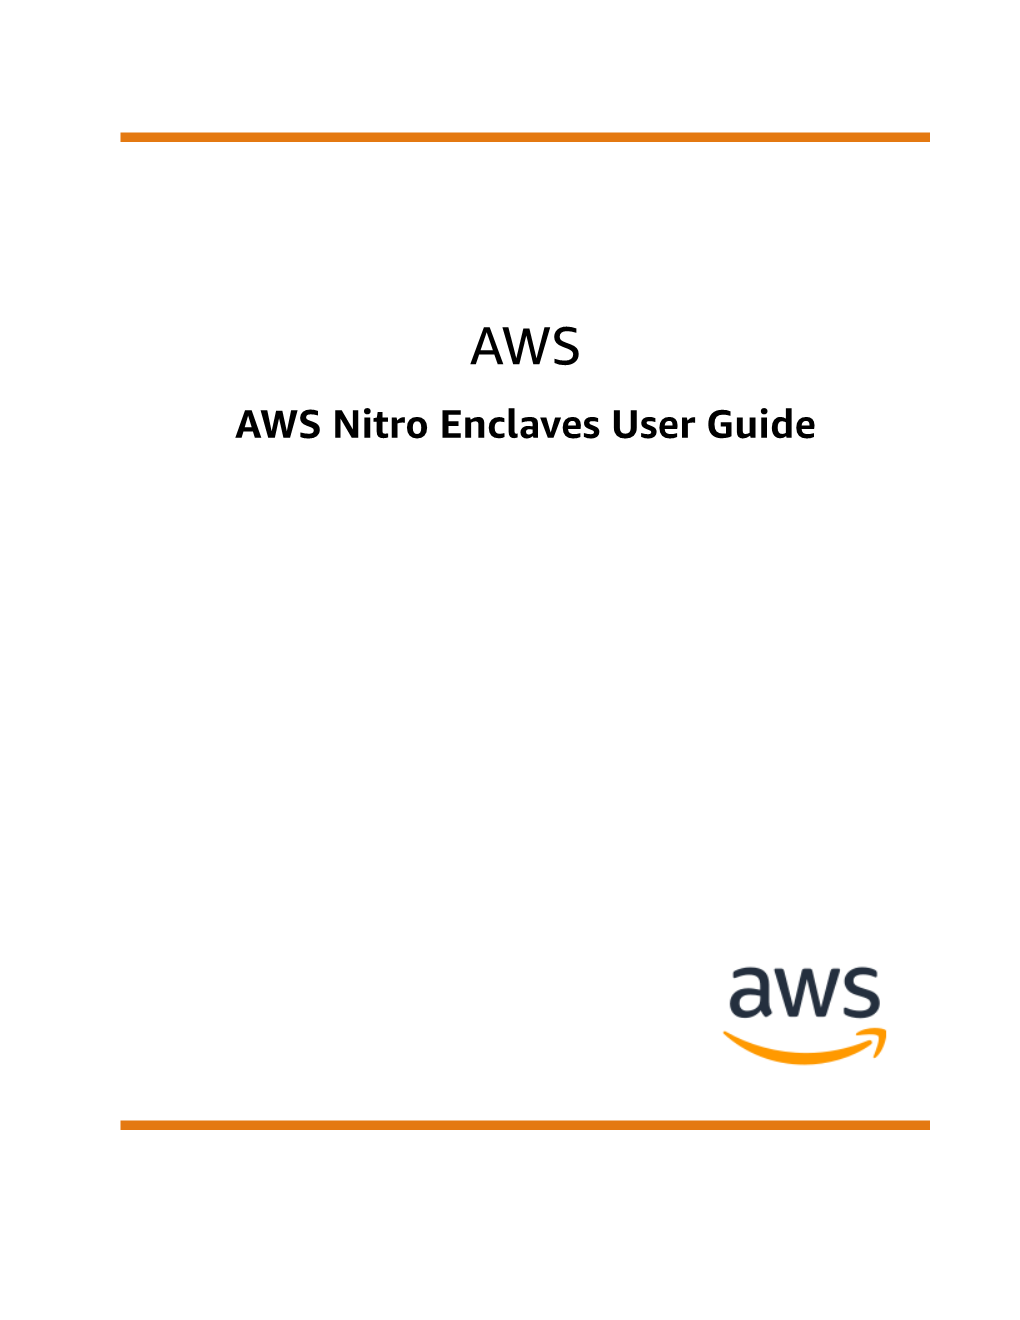 AWS Nitro Enclaves User Guide AWS AWS Nitro Enclaves User Guide